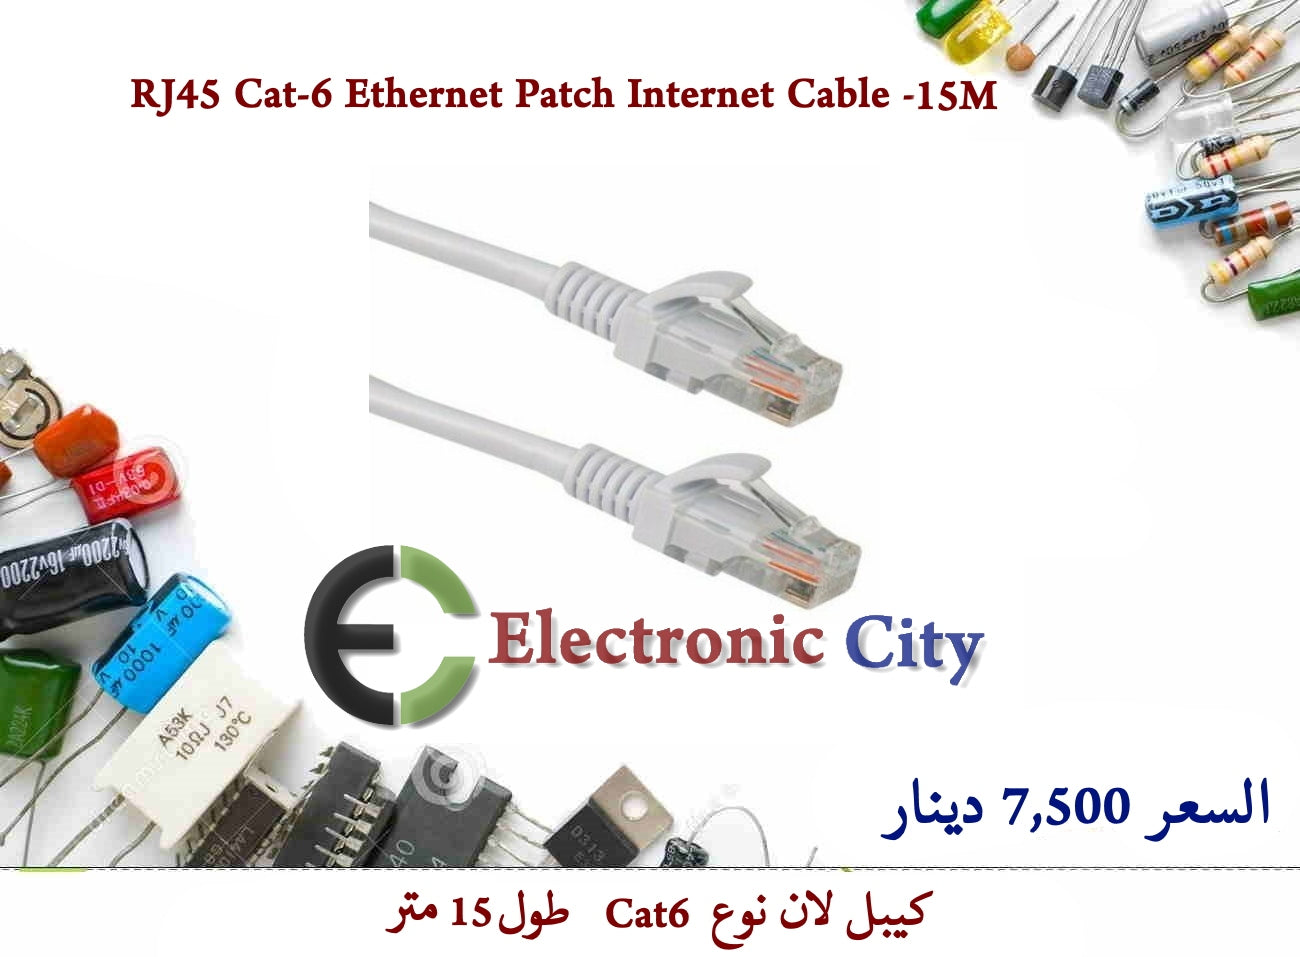 RJ45 Cat-6 Ethernet Patch Internet Cable -15M